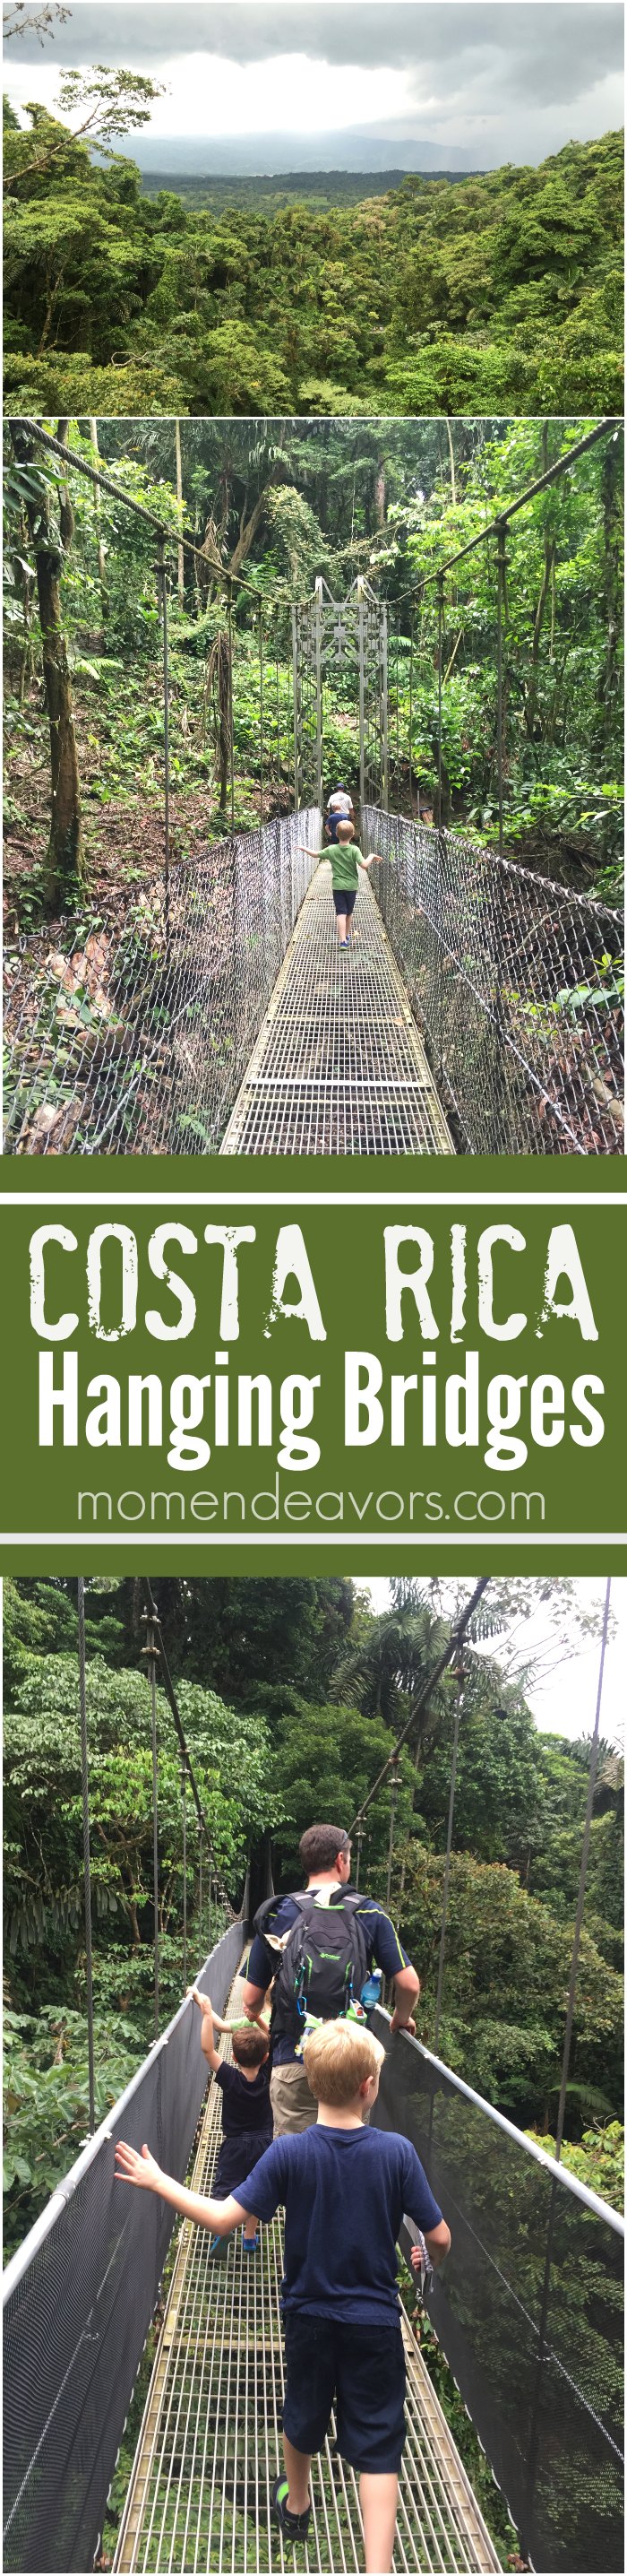 Costa Rica Hanging Bridges